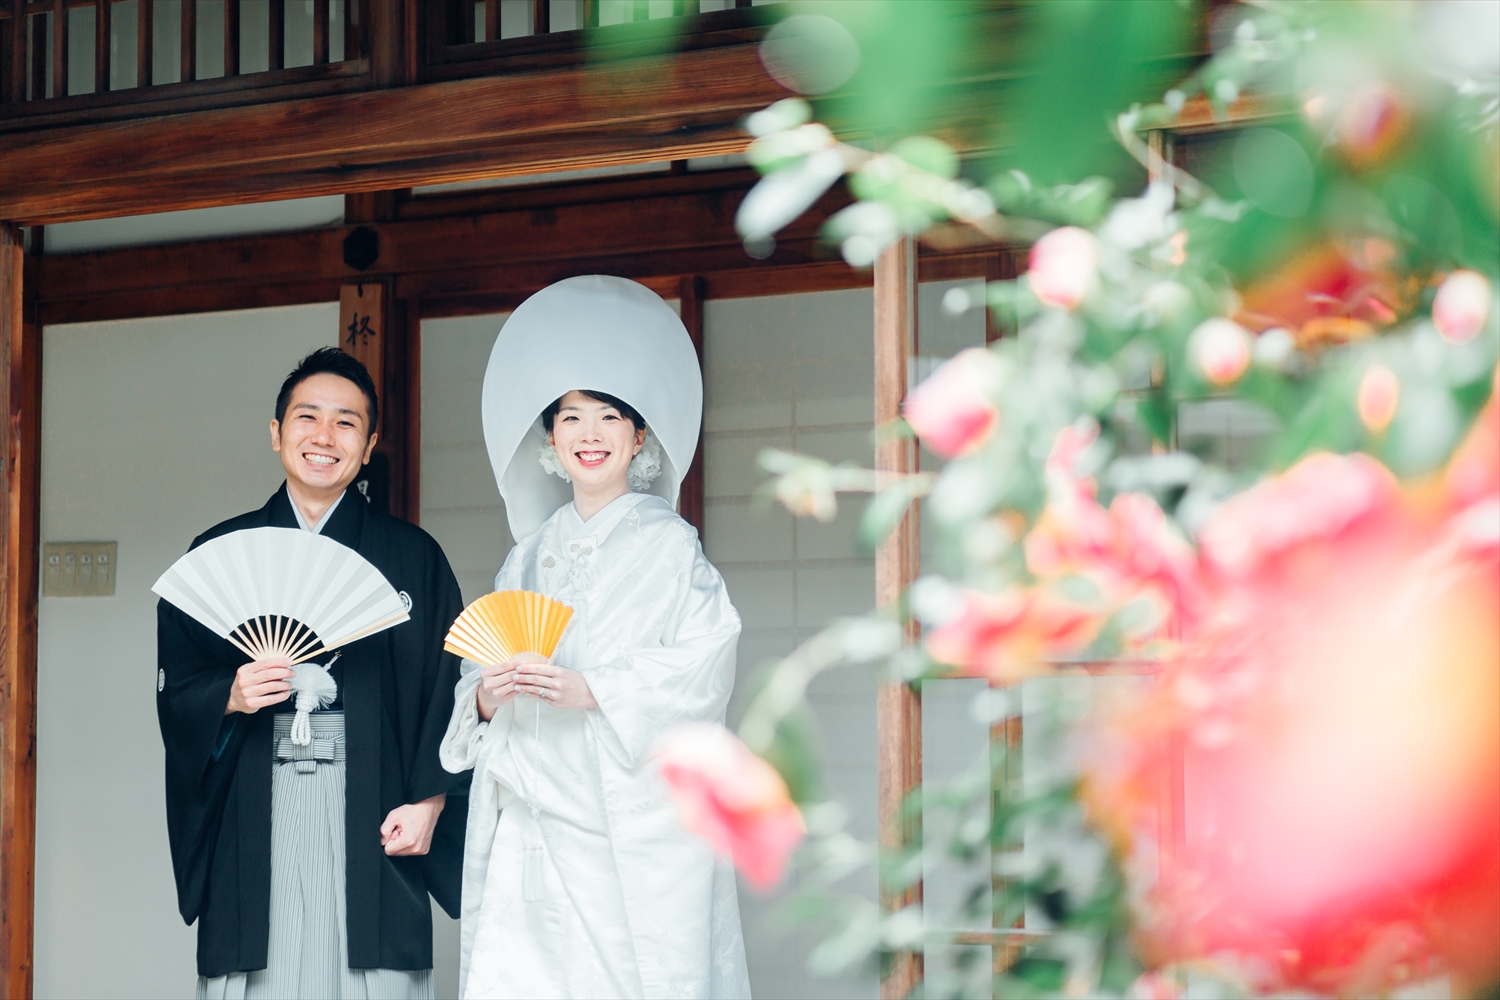 下鴨神社 グランヴィア京都での結婚式 結婚式ビデオ撮影 写真撮影なら月山映像へ 大阪 神戸 京都